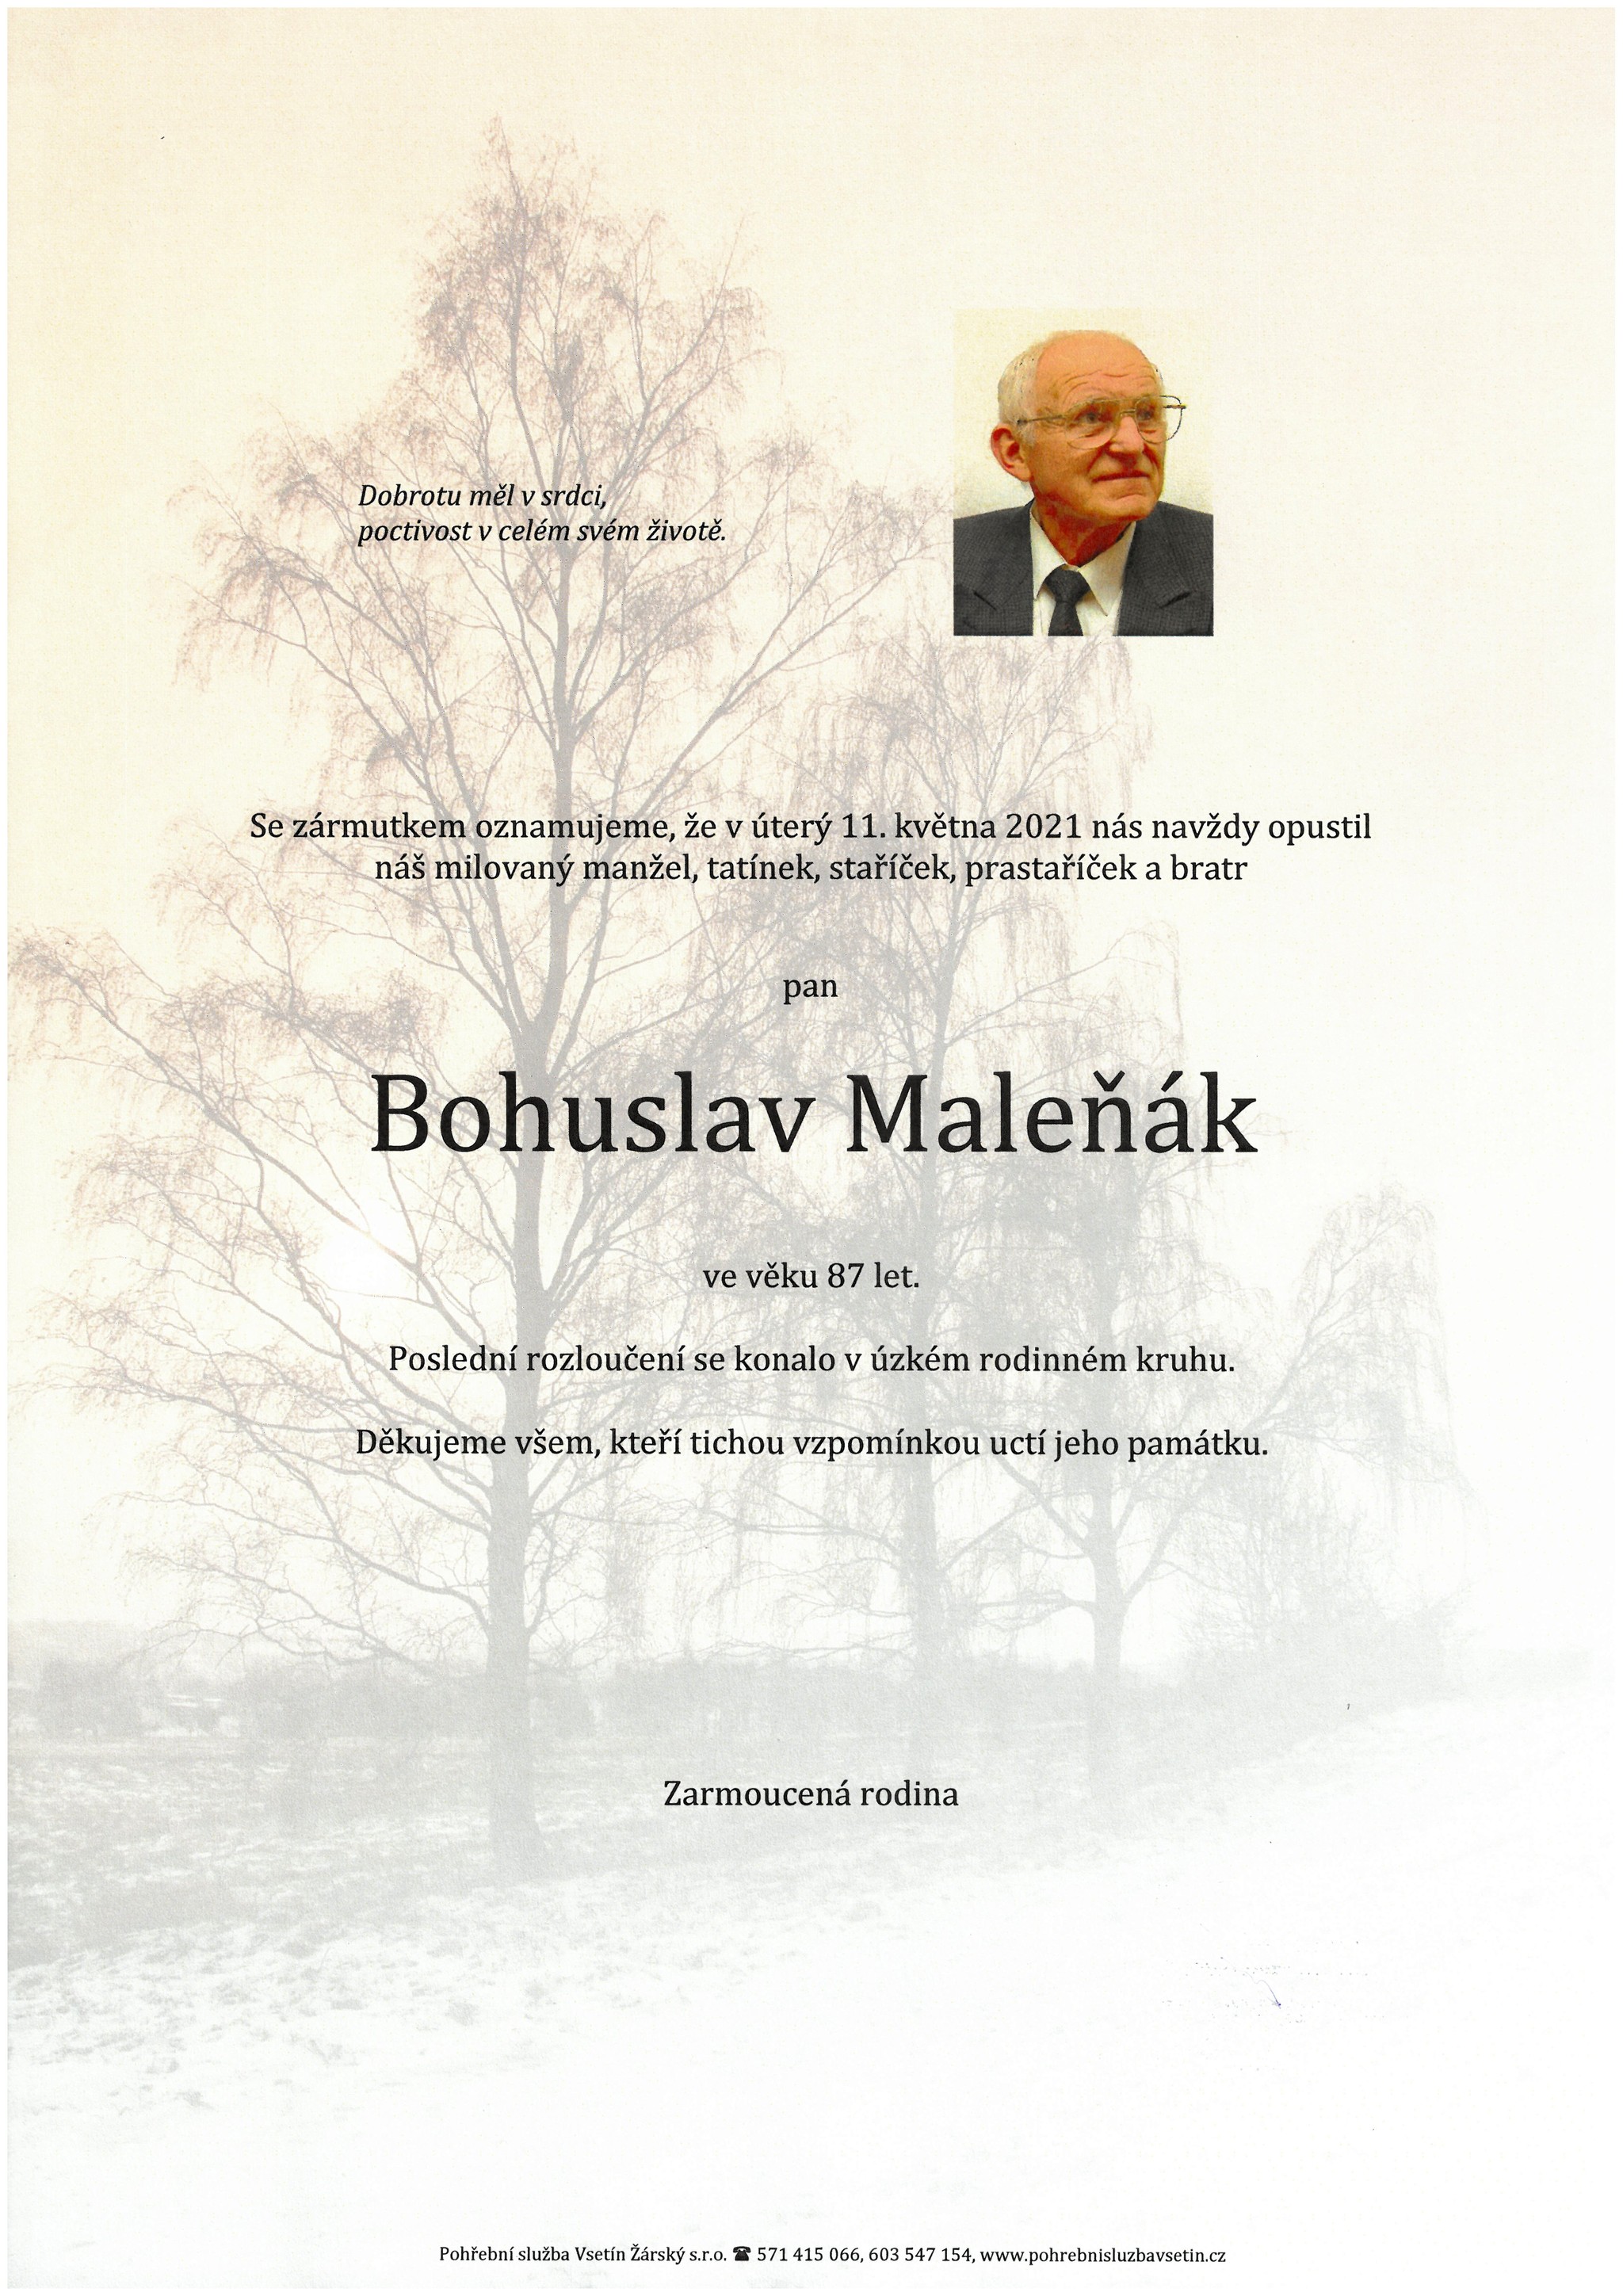 Bohuslav Maleňák